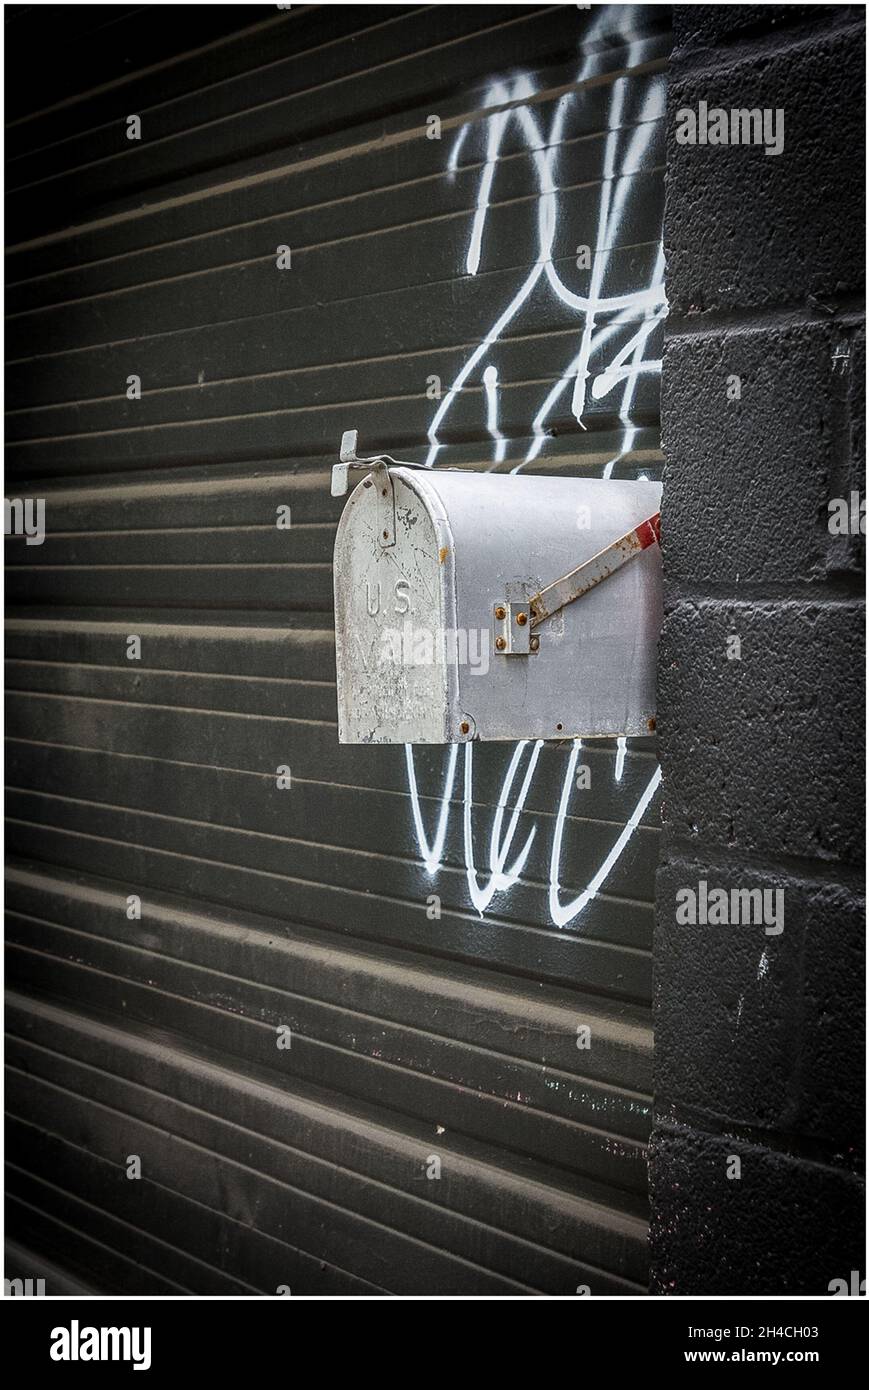 Cliché vertical d'une boîte aux lettres dans une rue Banque D'Images